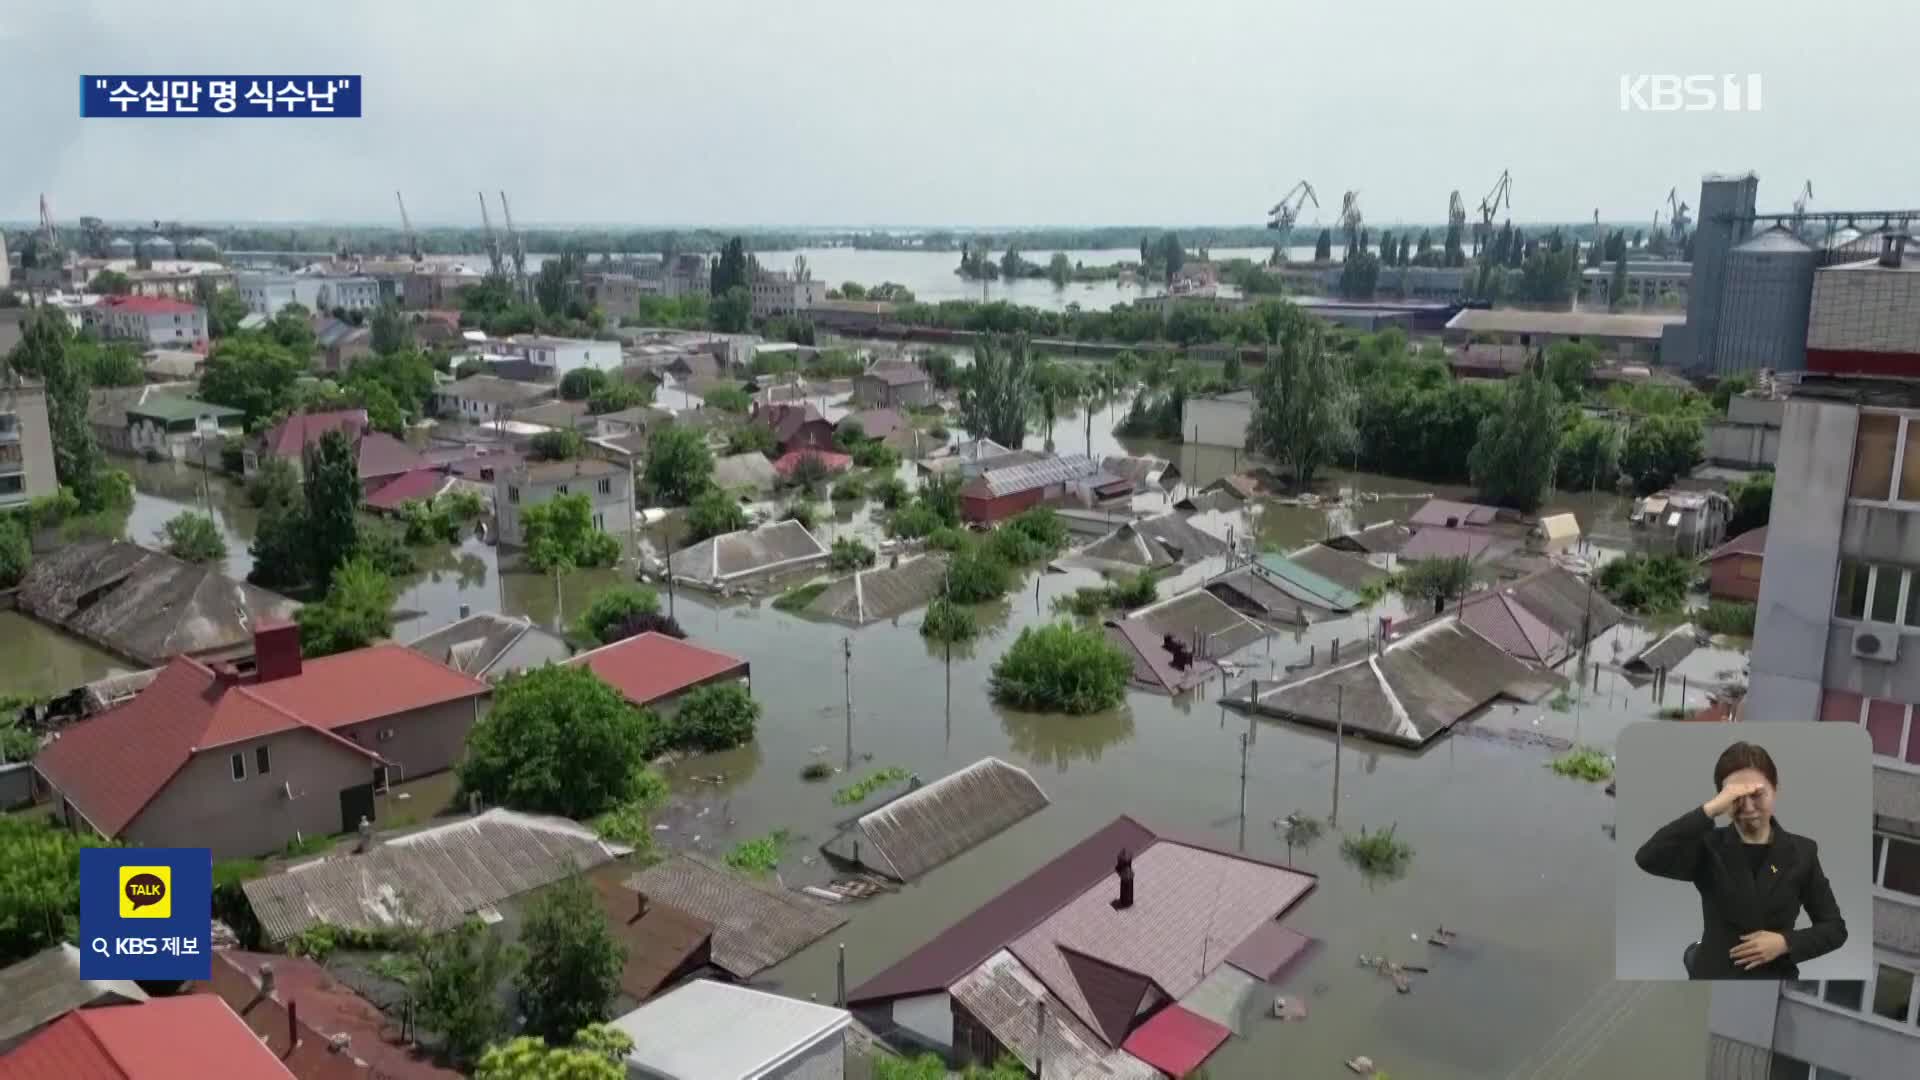 “댐 폭발로 수십만 명 식수난”…국제위원회 조사 제안도